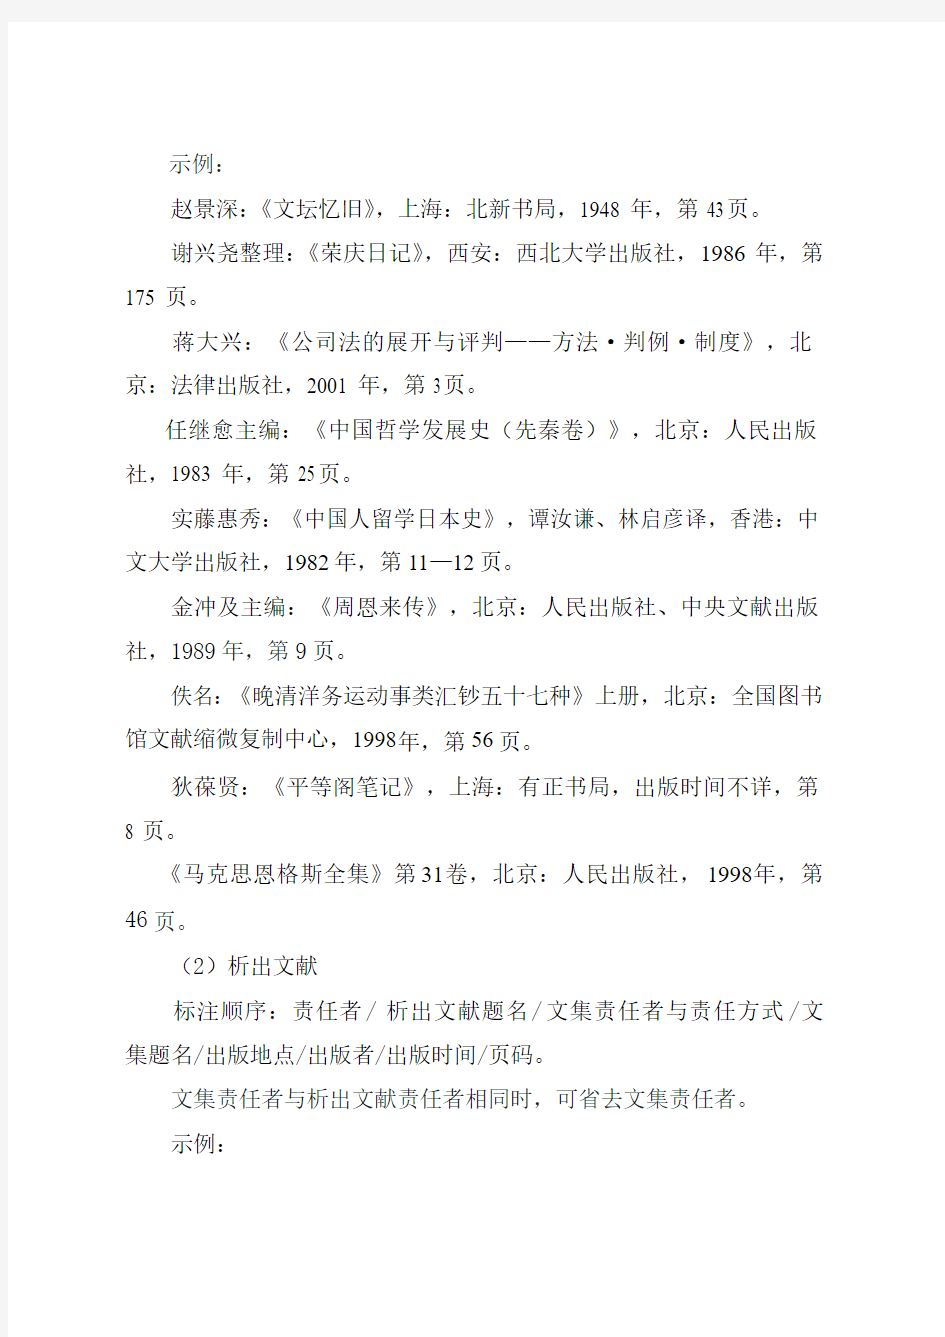 中国社会科学杂志社关于论文注释的规定